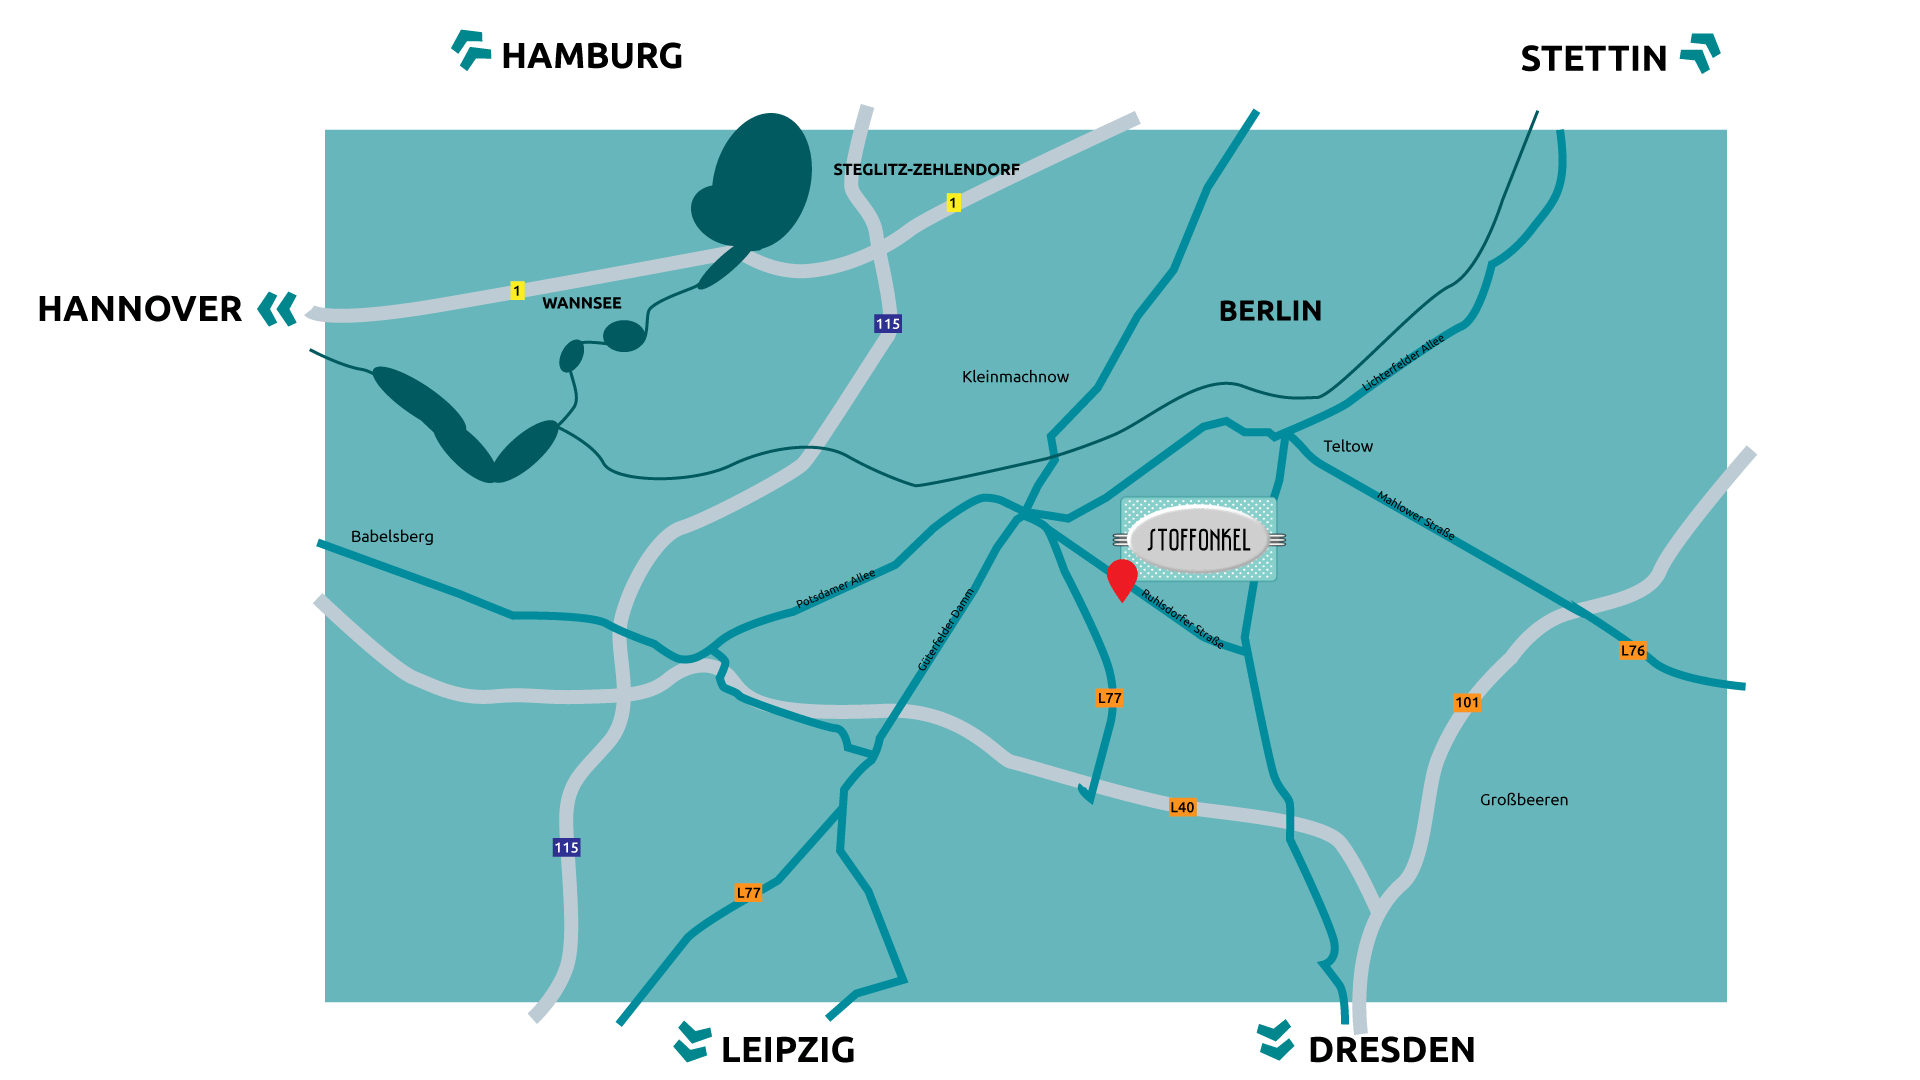 Anfahrt-Skizze nähere Umgebung: Buslinien 601 und 626, S-Bahnlinie S26